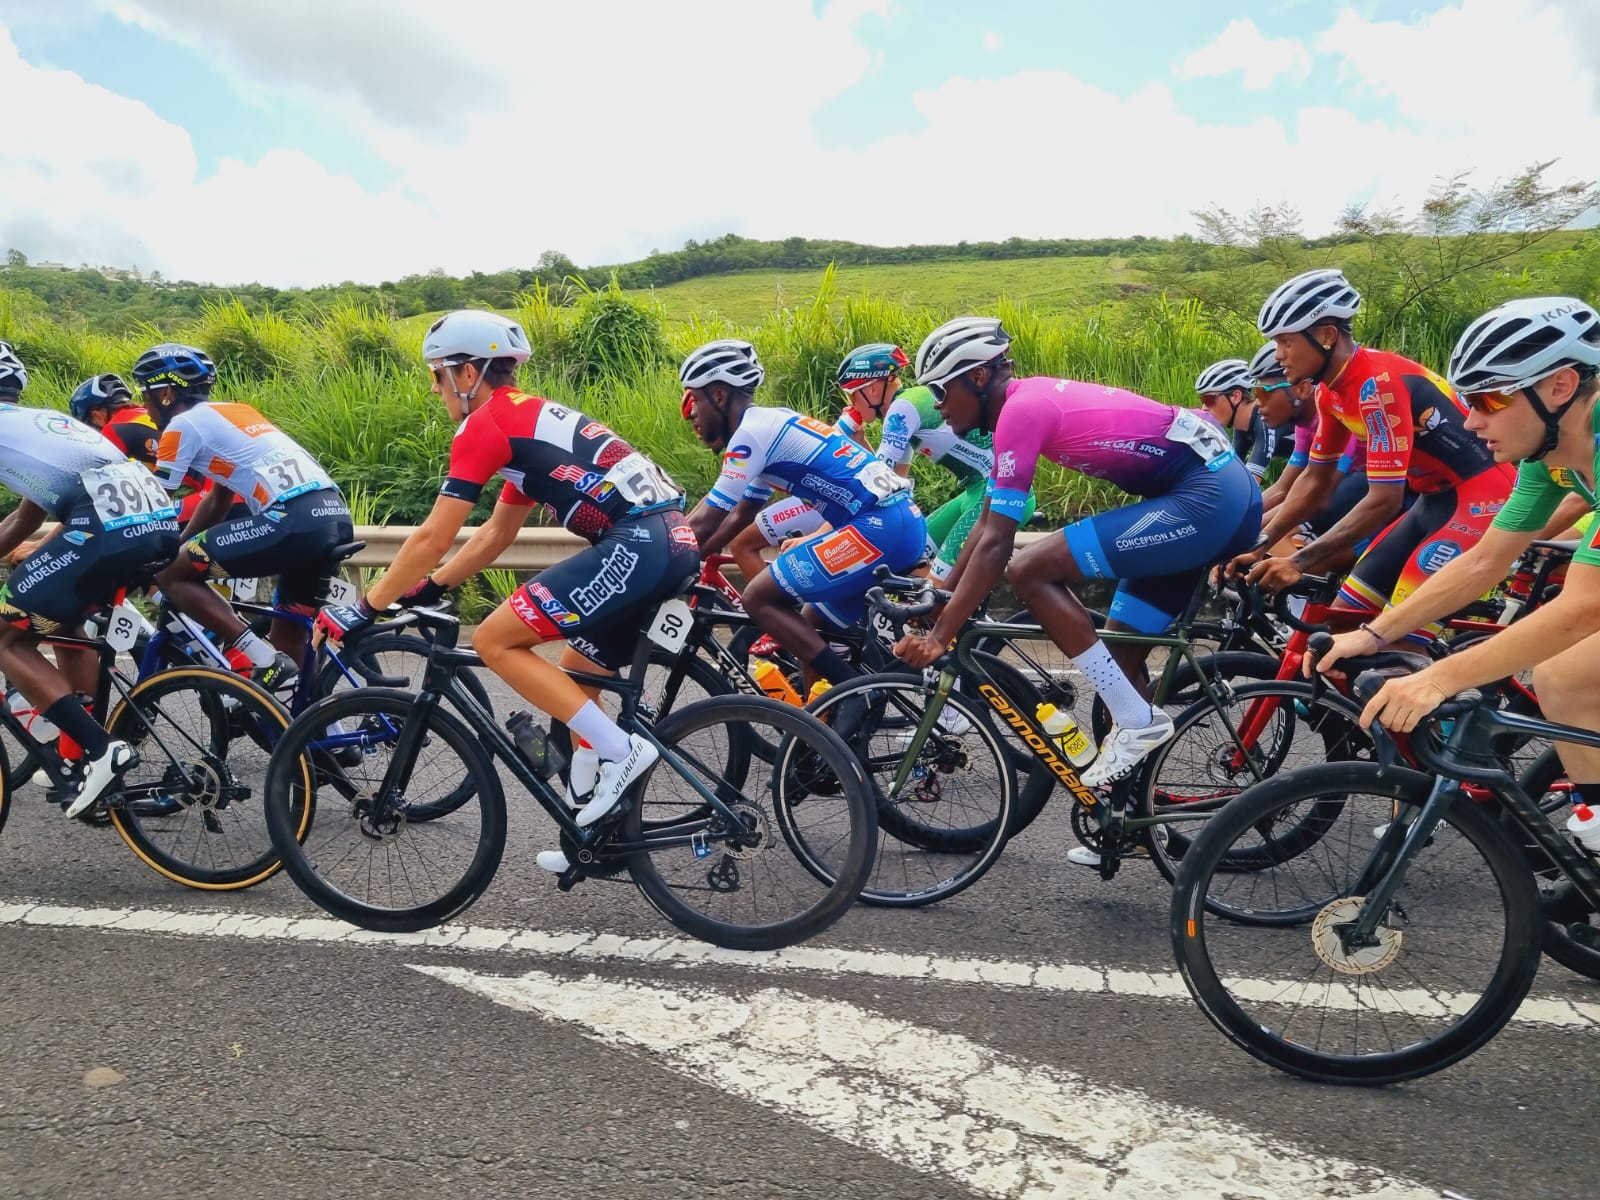     6ème étape du Tour cycliste de Martinique : Sainte-Luce - François en passant par Gallochat

